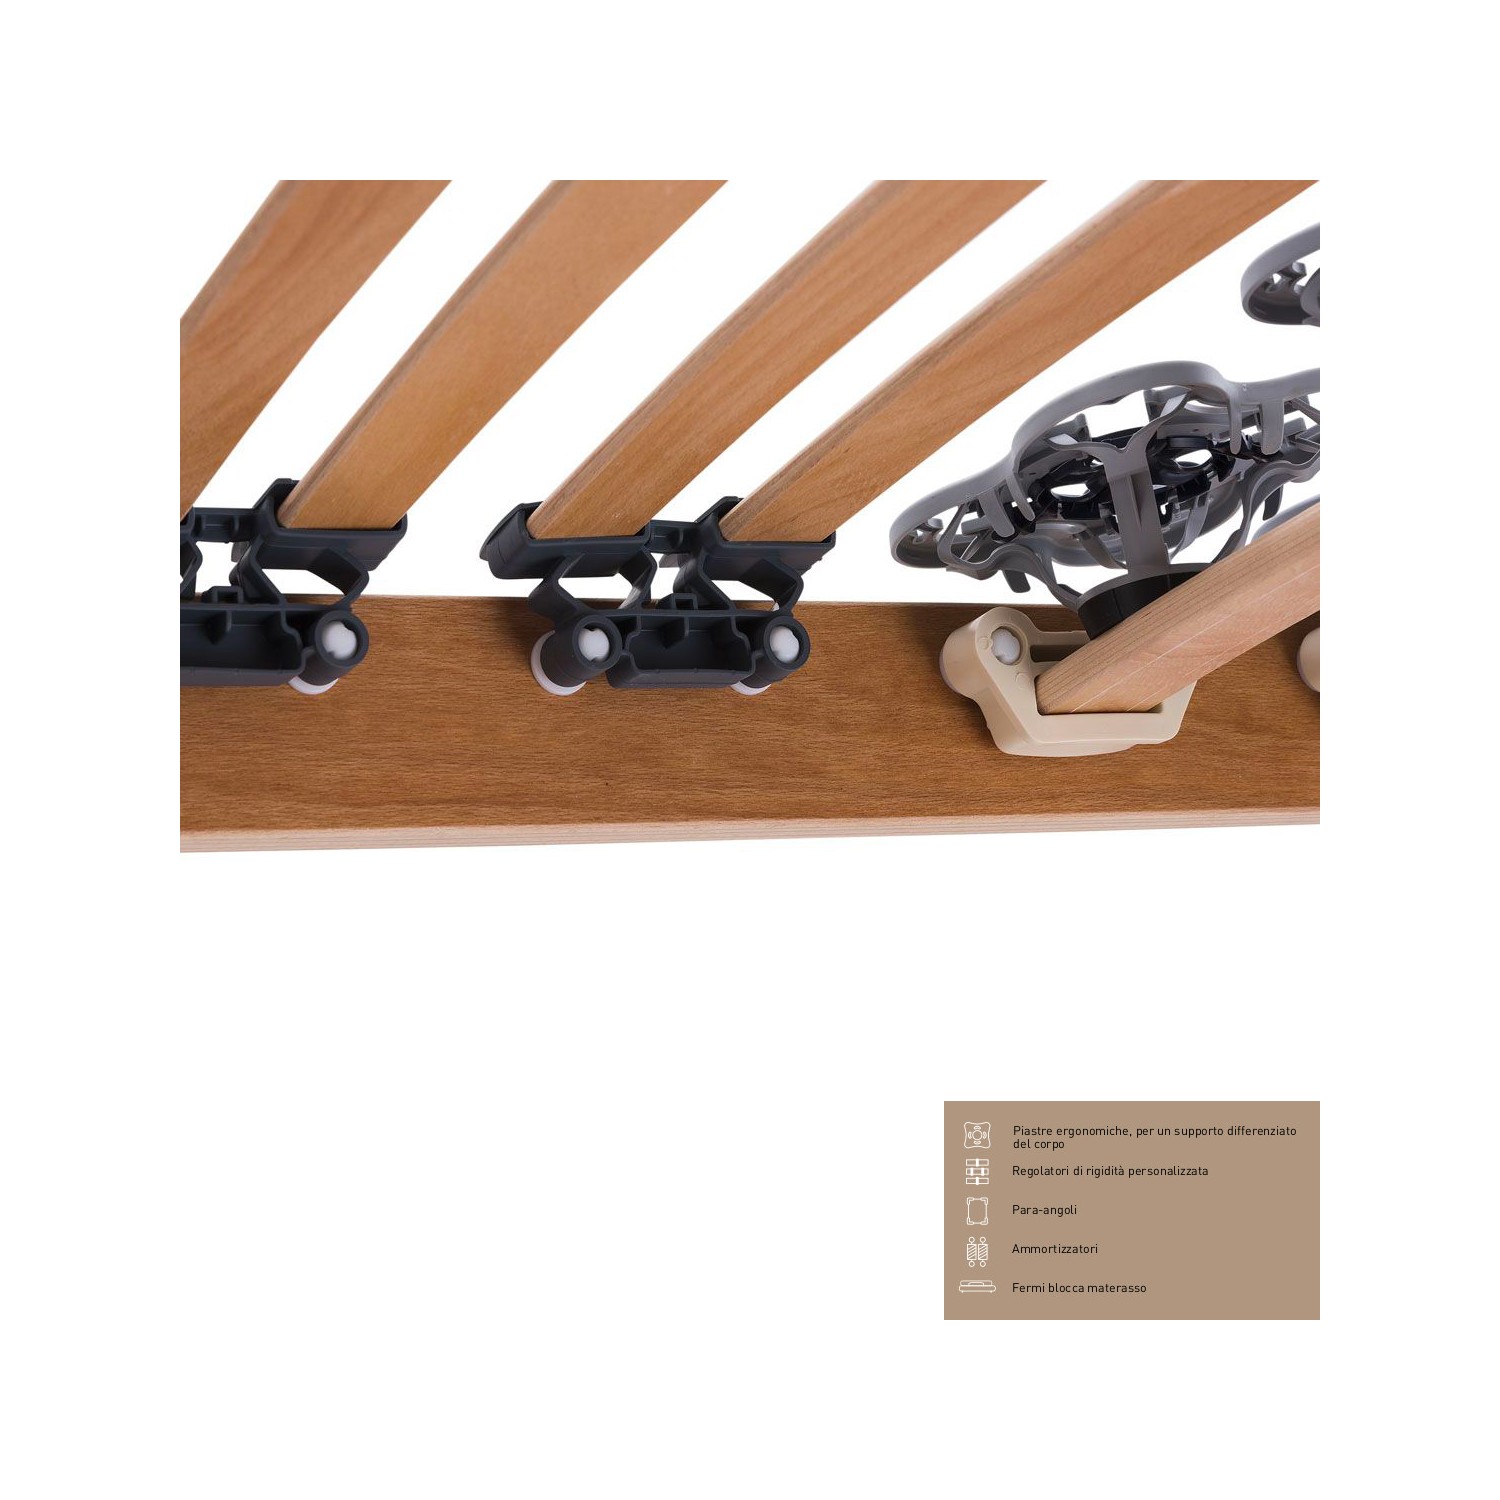 Rete Magniflex ERGO DUE FISSA cm 170 x 190/195/200 piastre ergonomiche, regolatori di rigidità doghe legno